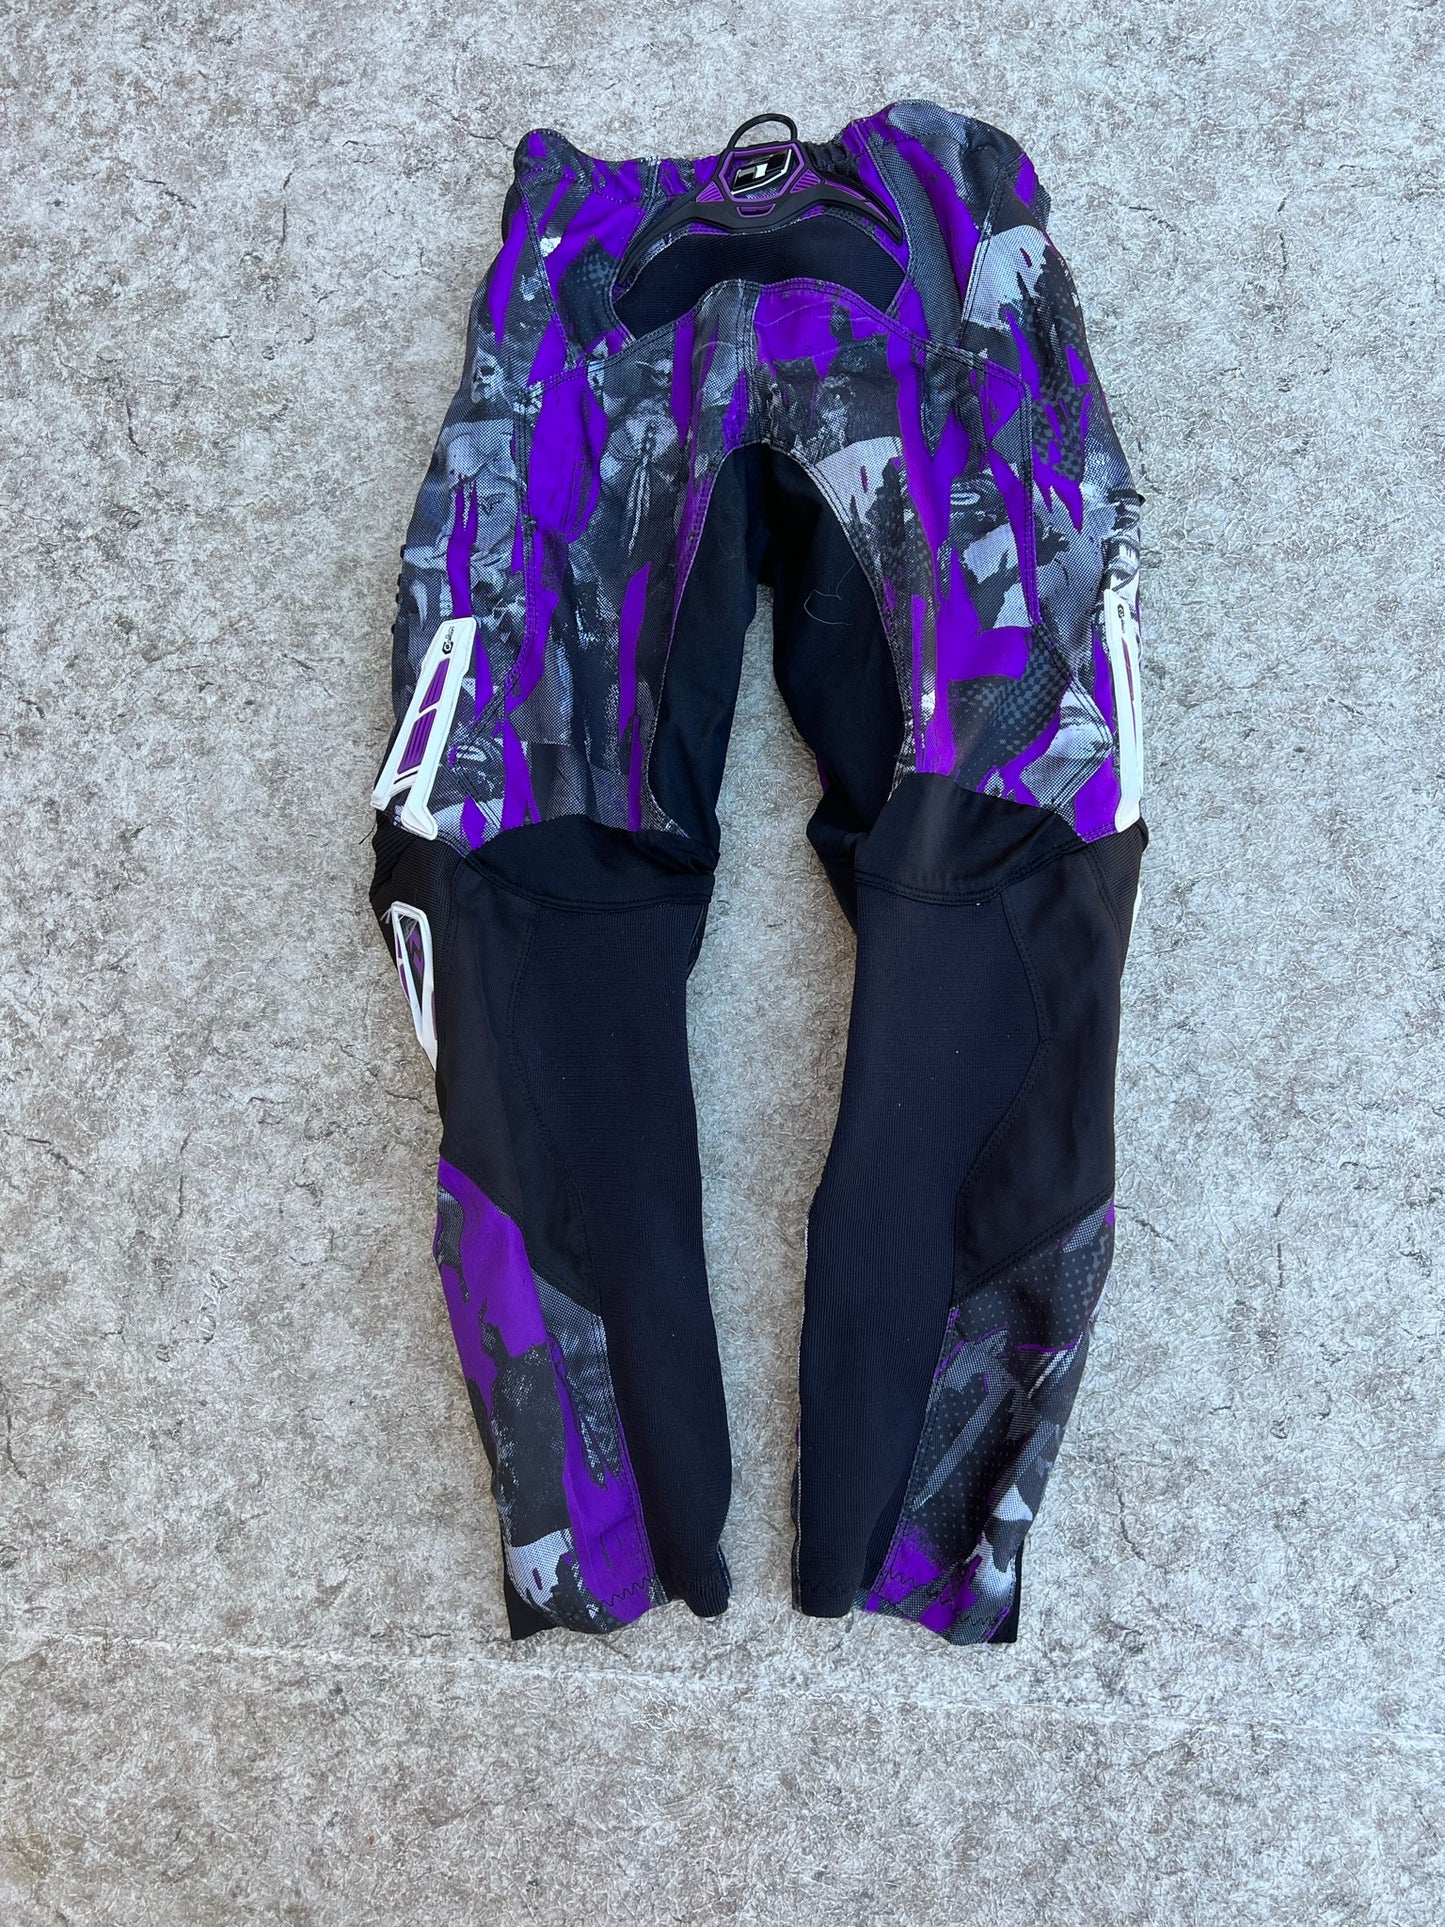 Motocross BMX Dirt Bike Child Size Junior 28 Inch One Carbon Pants Purple Black Excellent